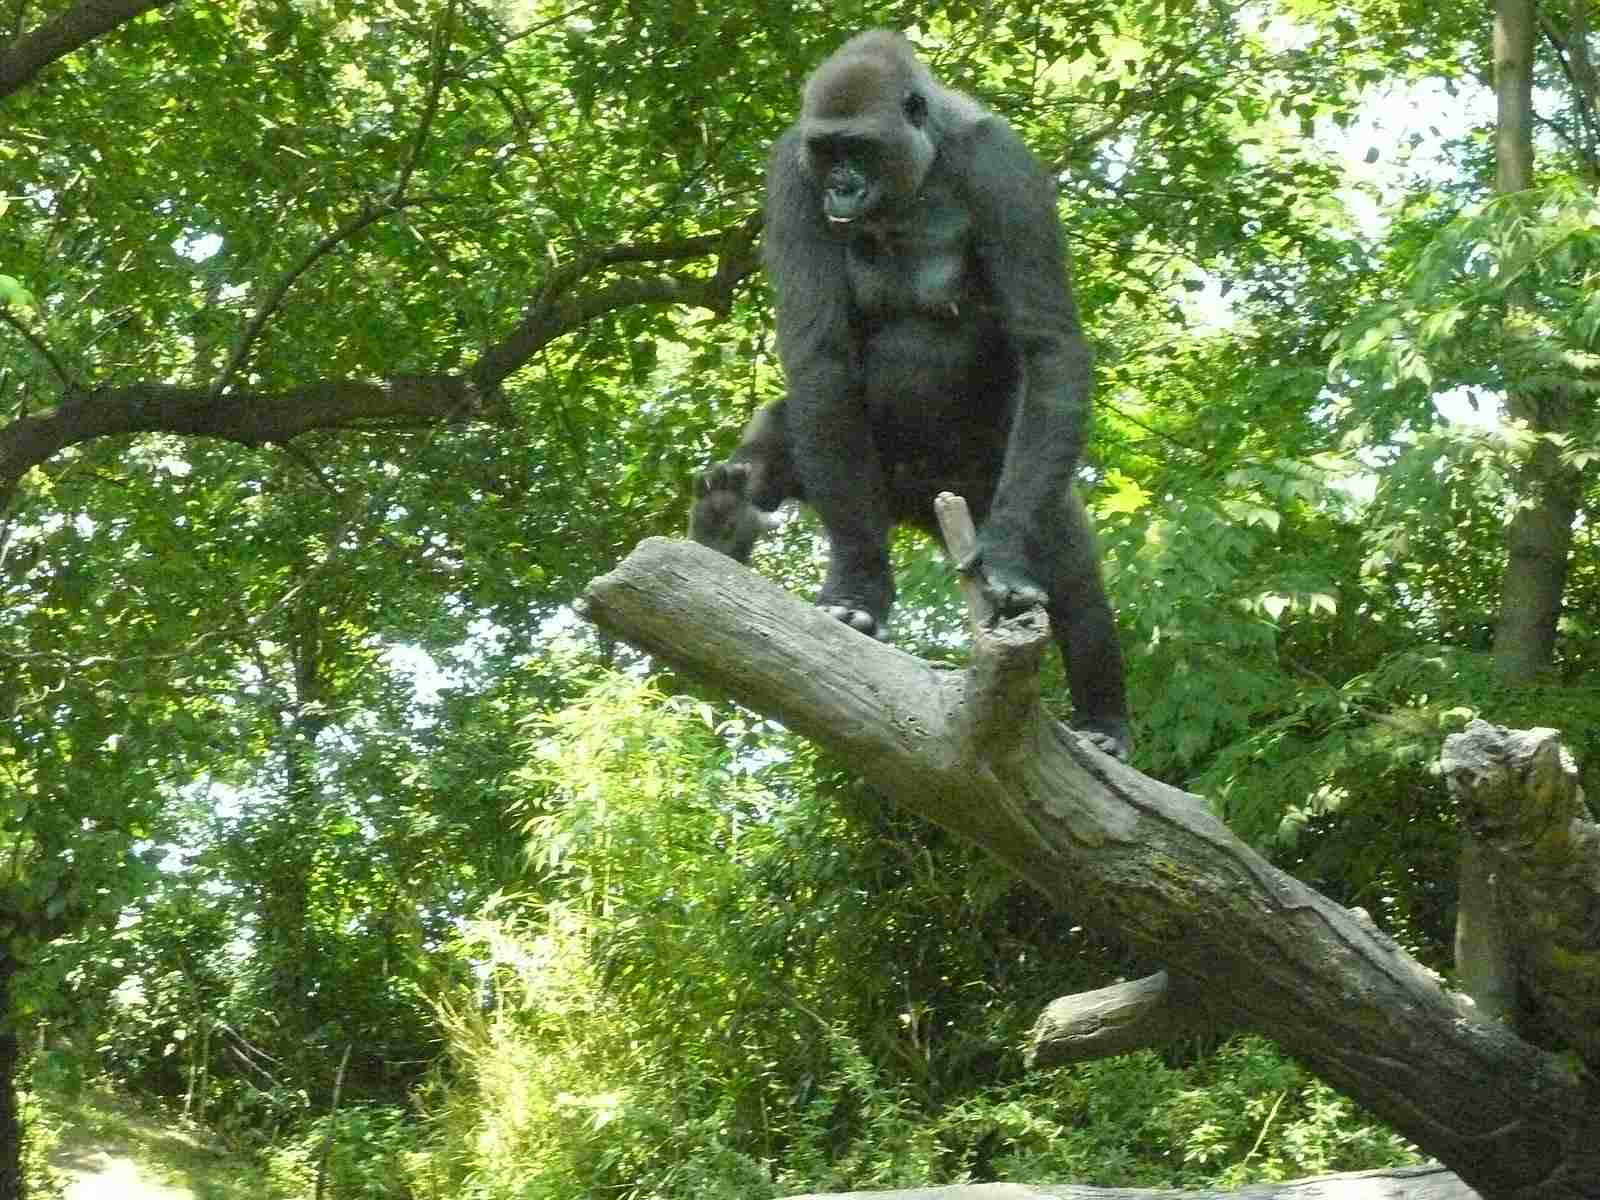 Gorilla Vs monkey